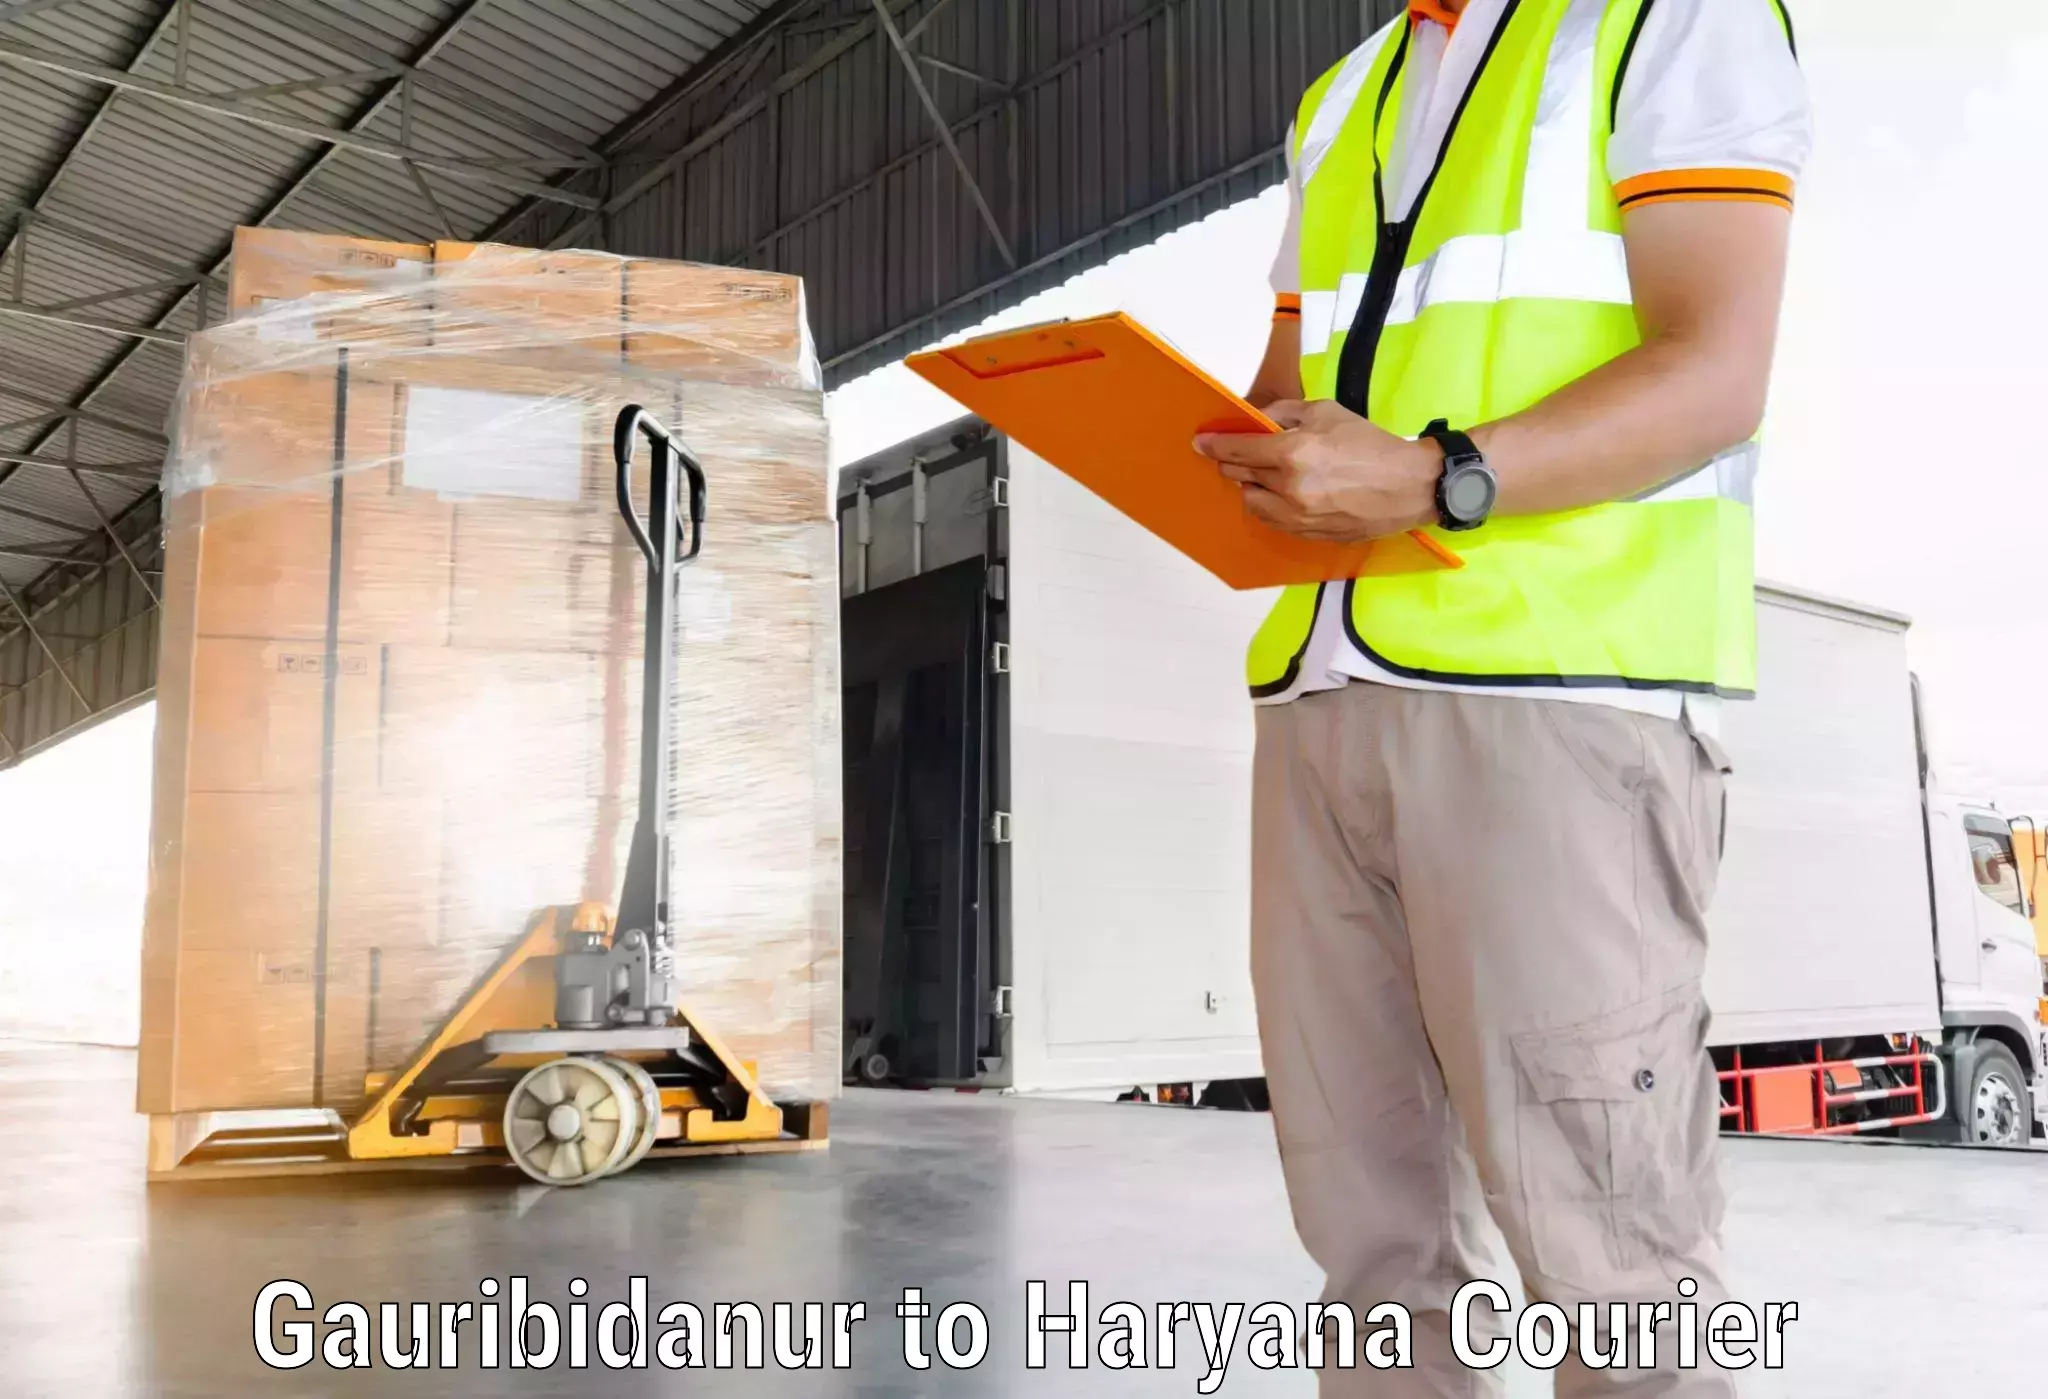 International courier rates Gauribidanur to Sohna